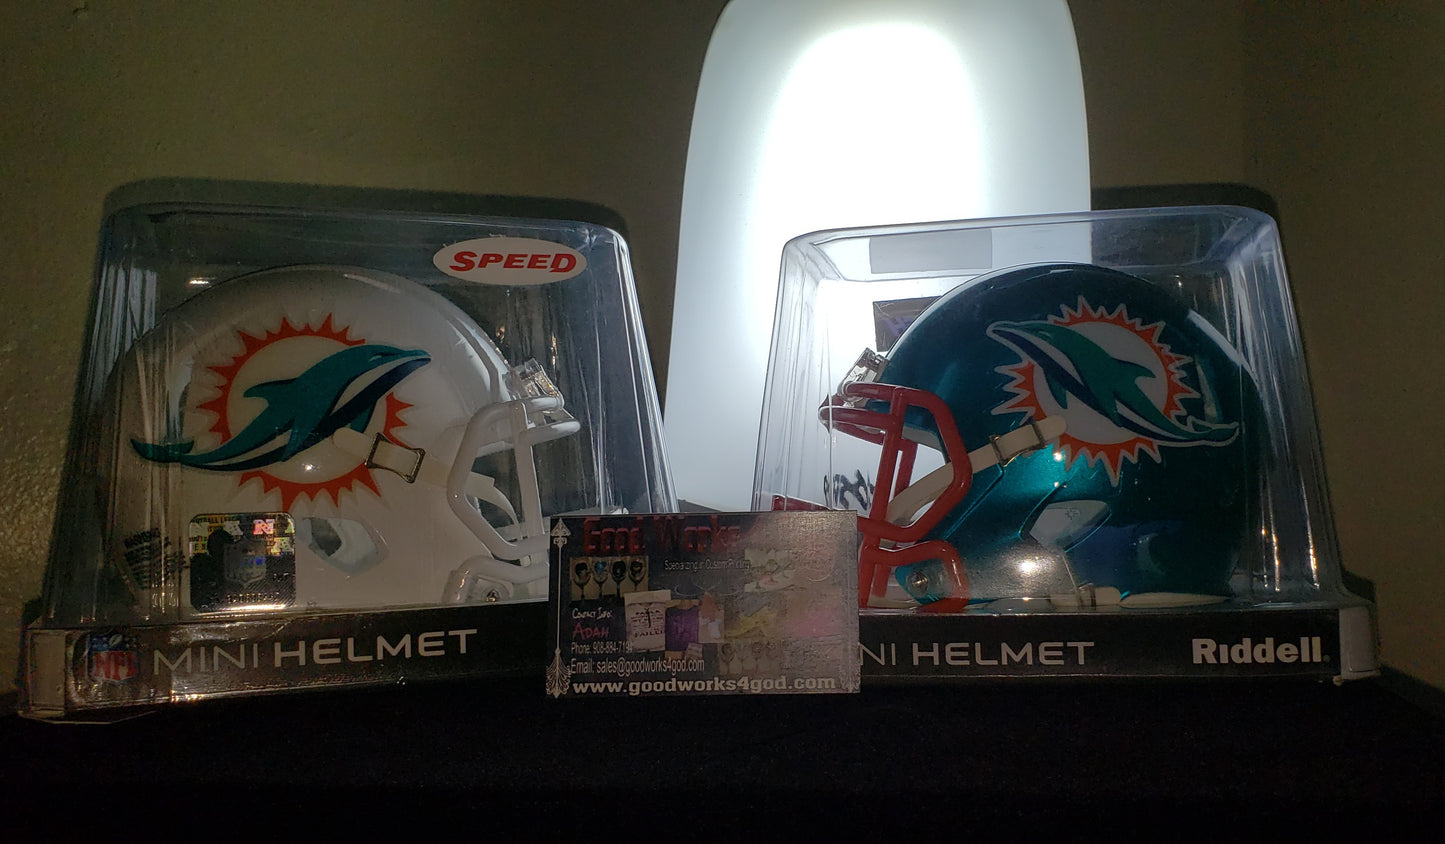 Rhinestone Miniature Football Helmets